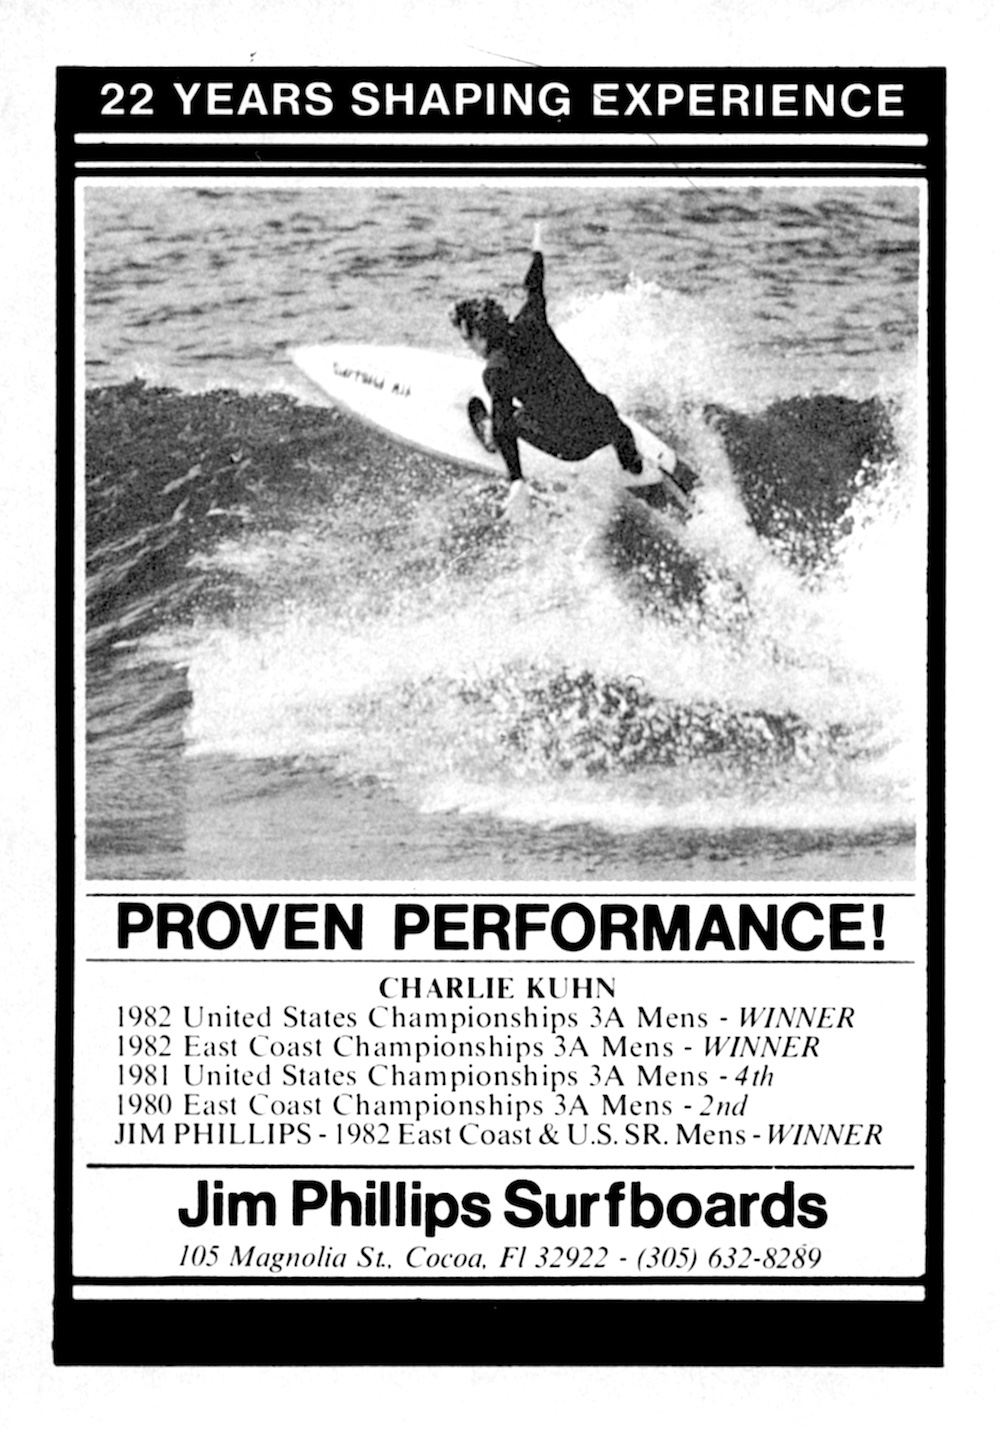 ESCHOF Class of 1998 - Jim Phillips